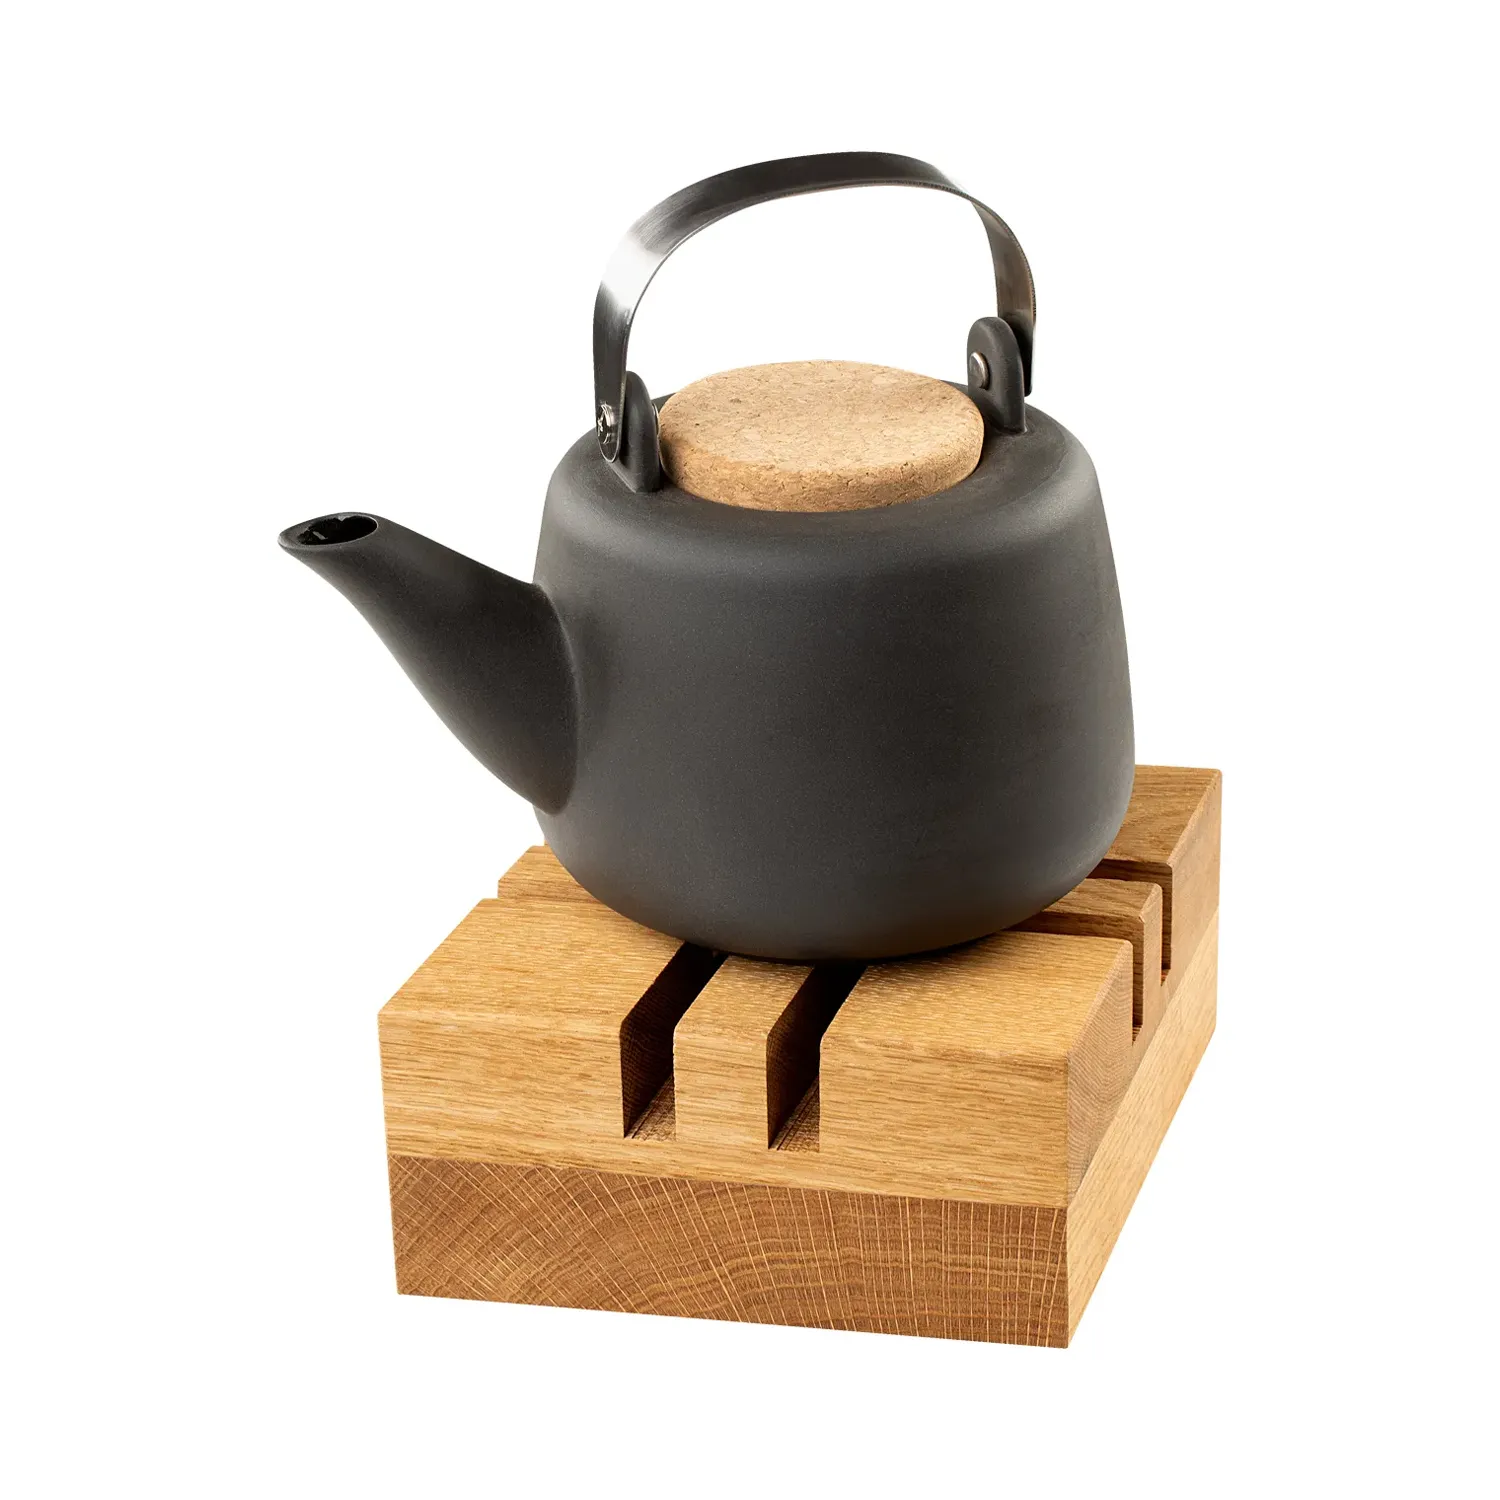 Stövchen aus massivem Holz mit Teekanne